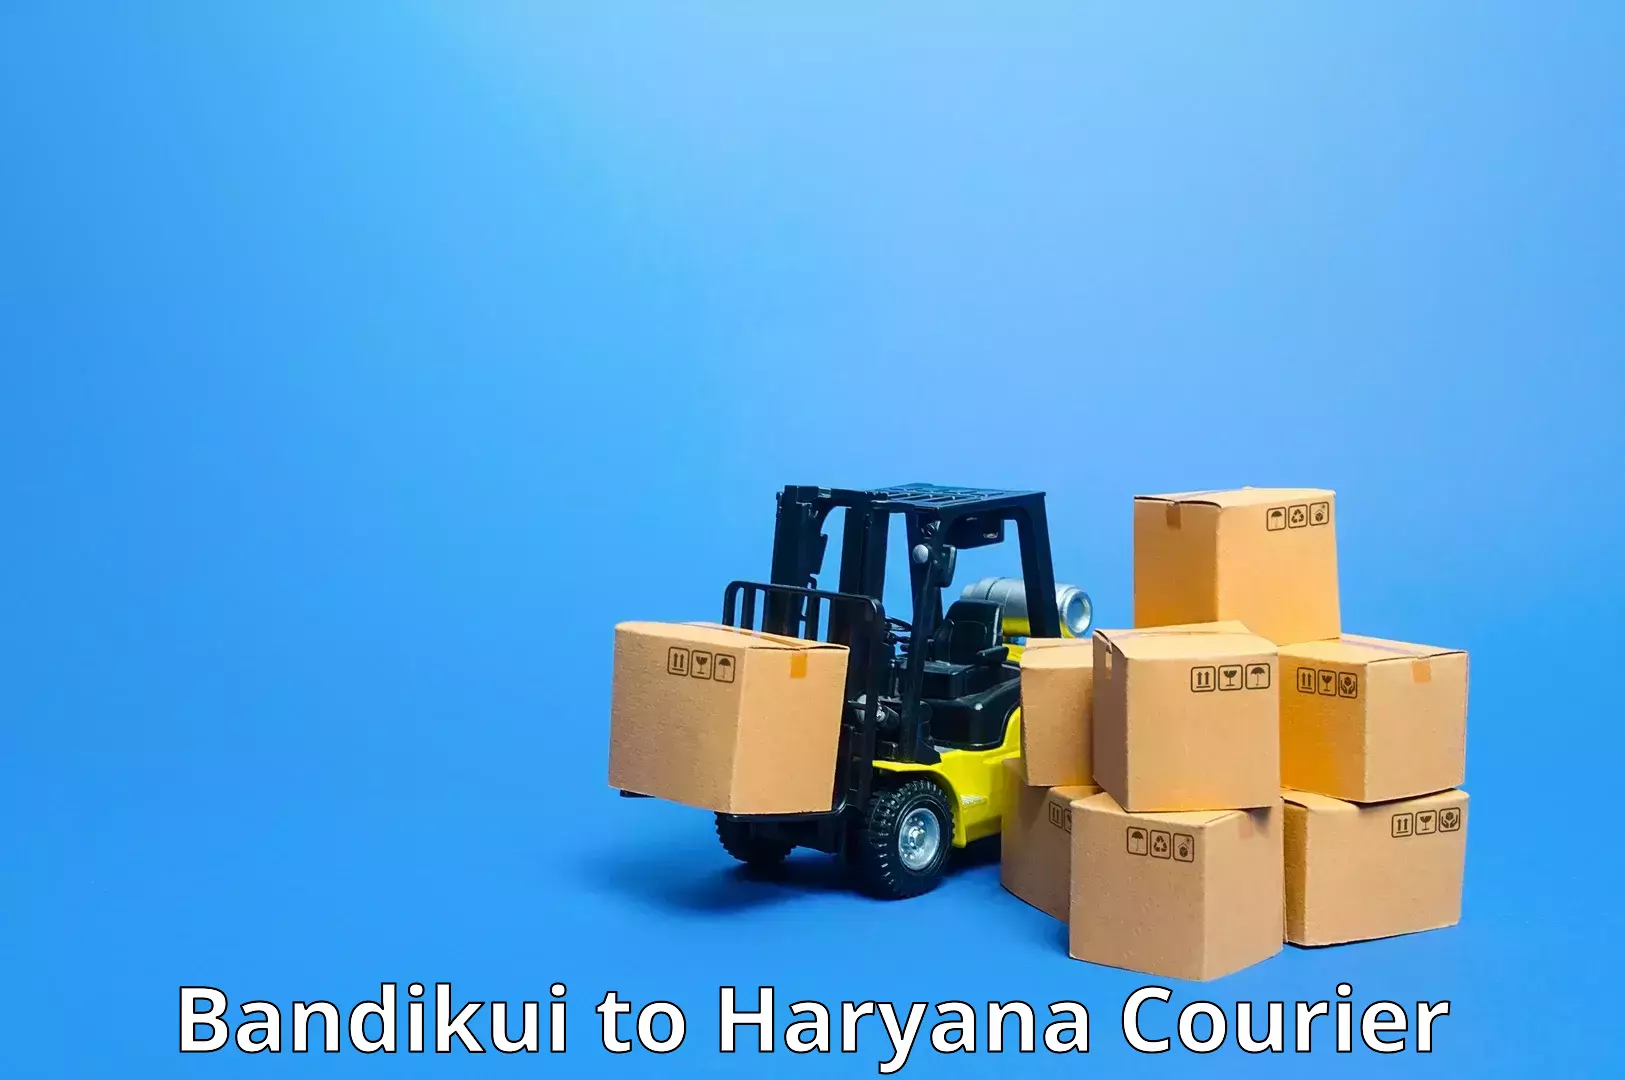 Digital courier platforms Bandikui to Gurugram